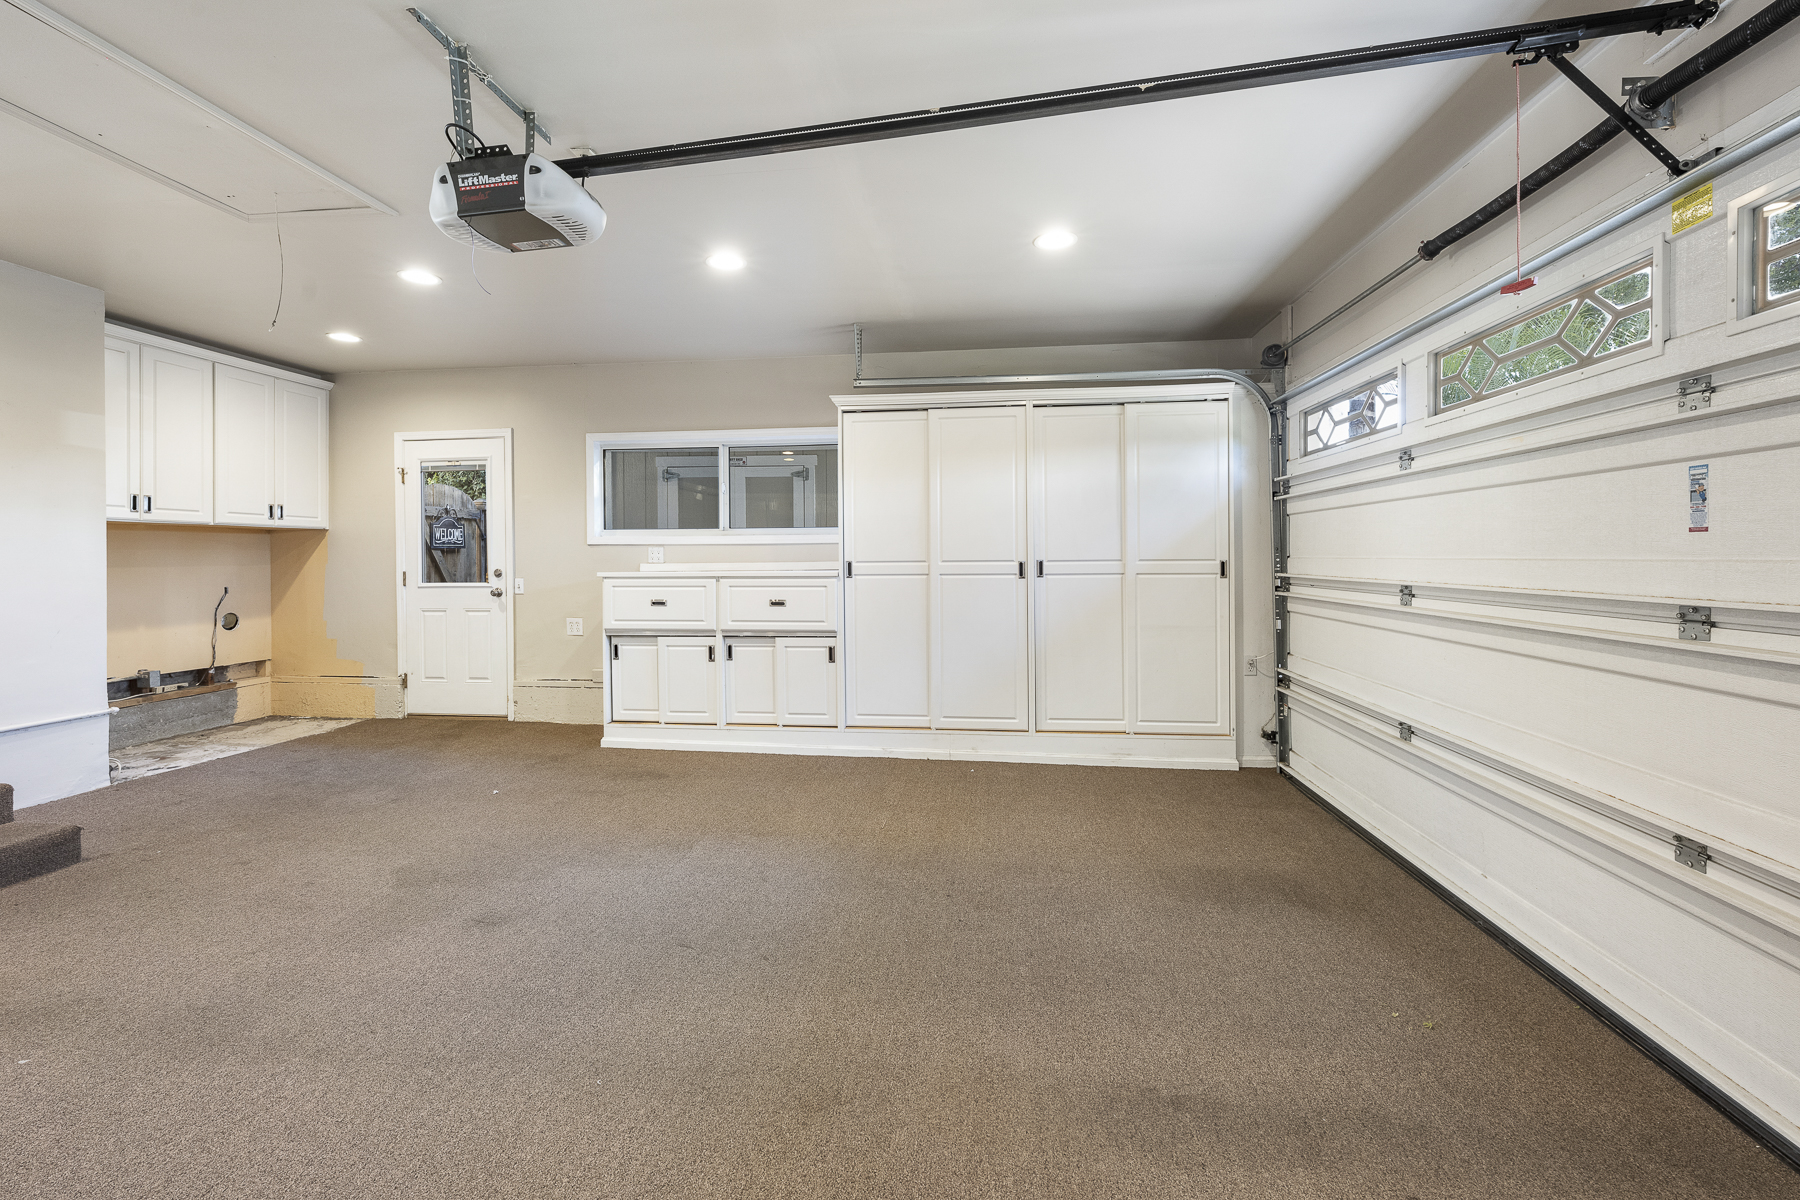 806 N. Adlena Drive, Fullerton, CA 92833: Interior shot of garage.